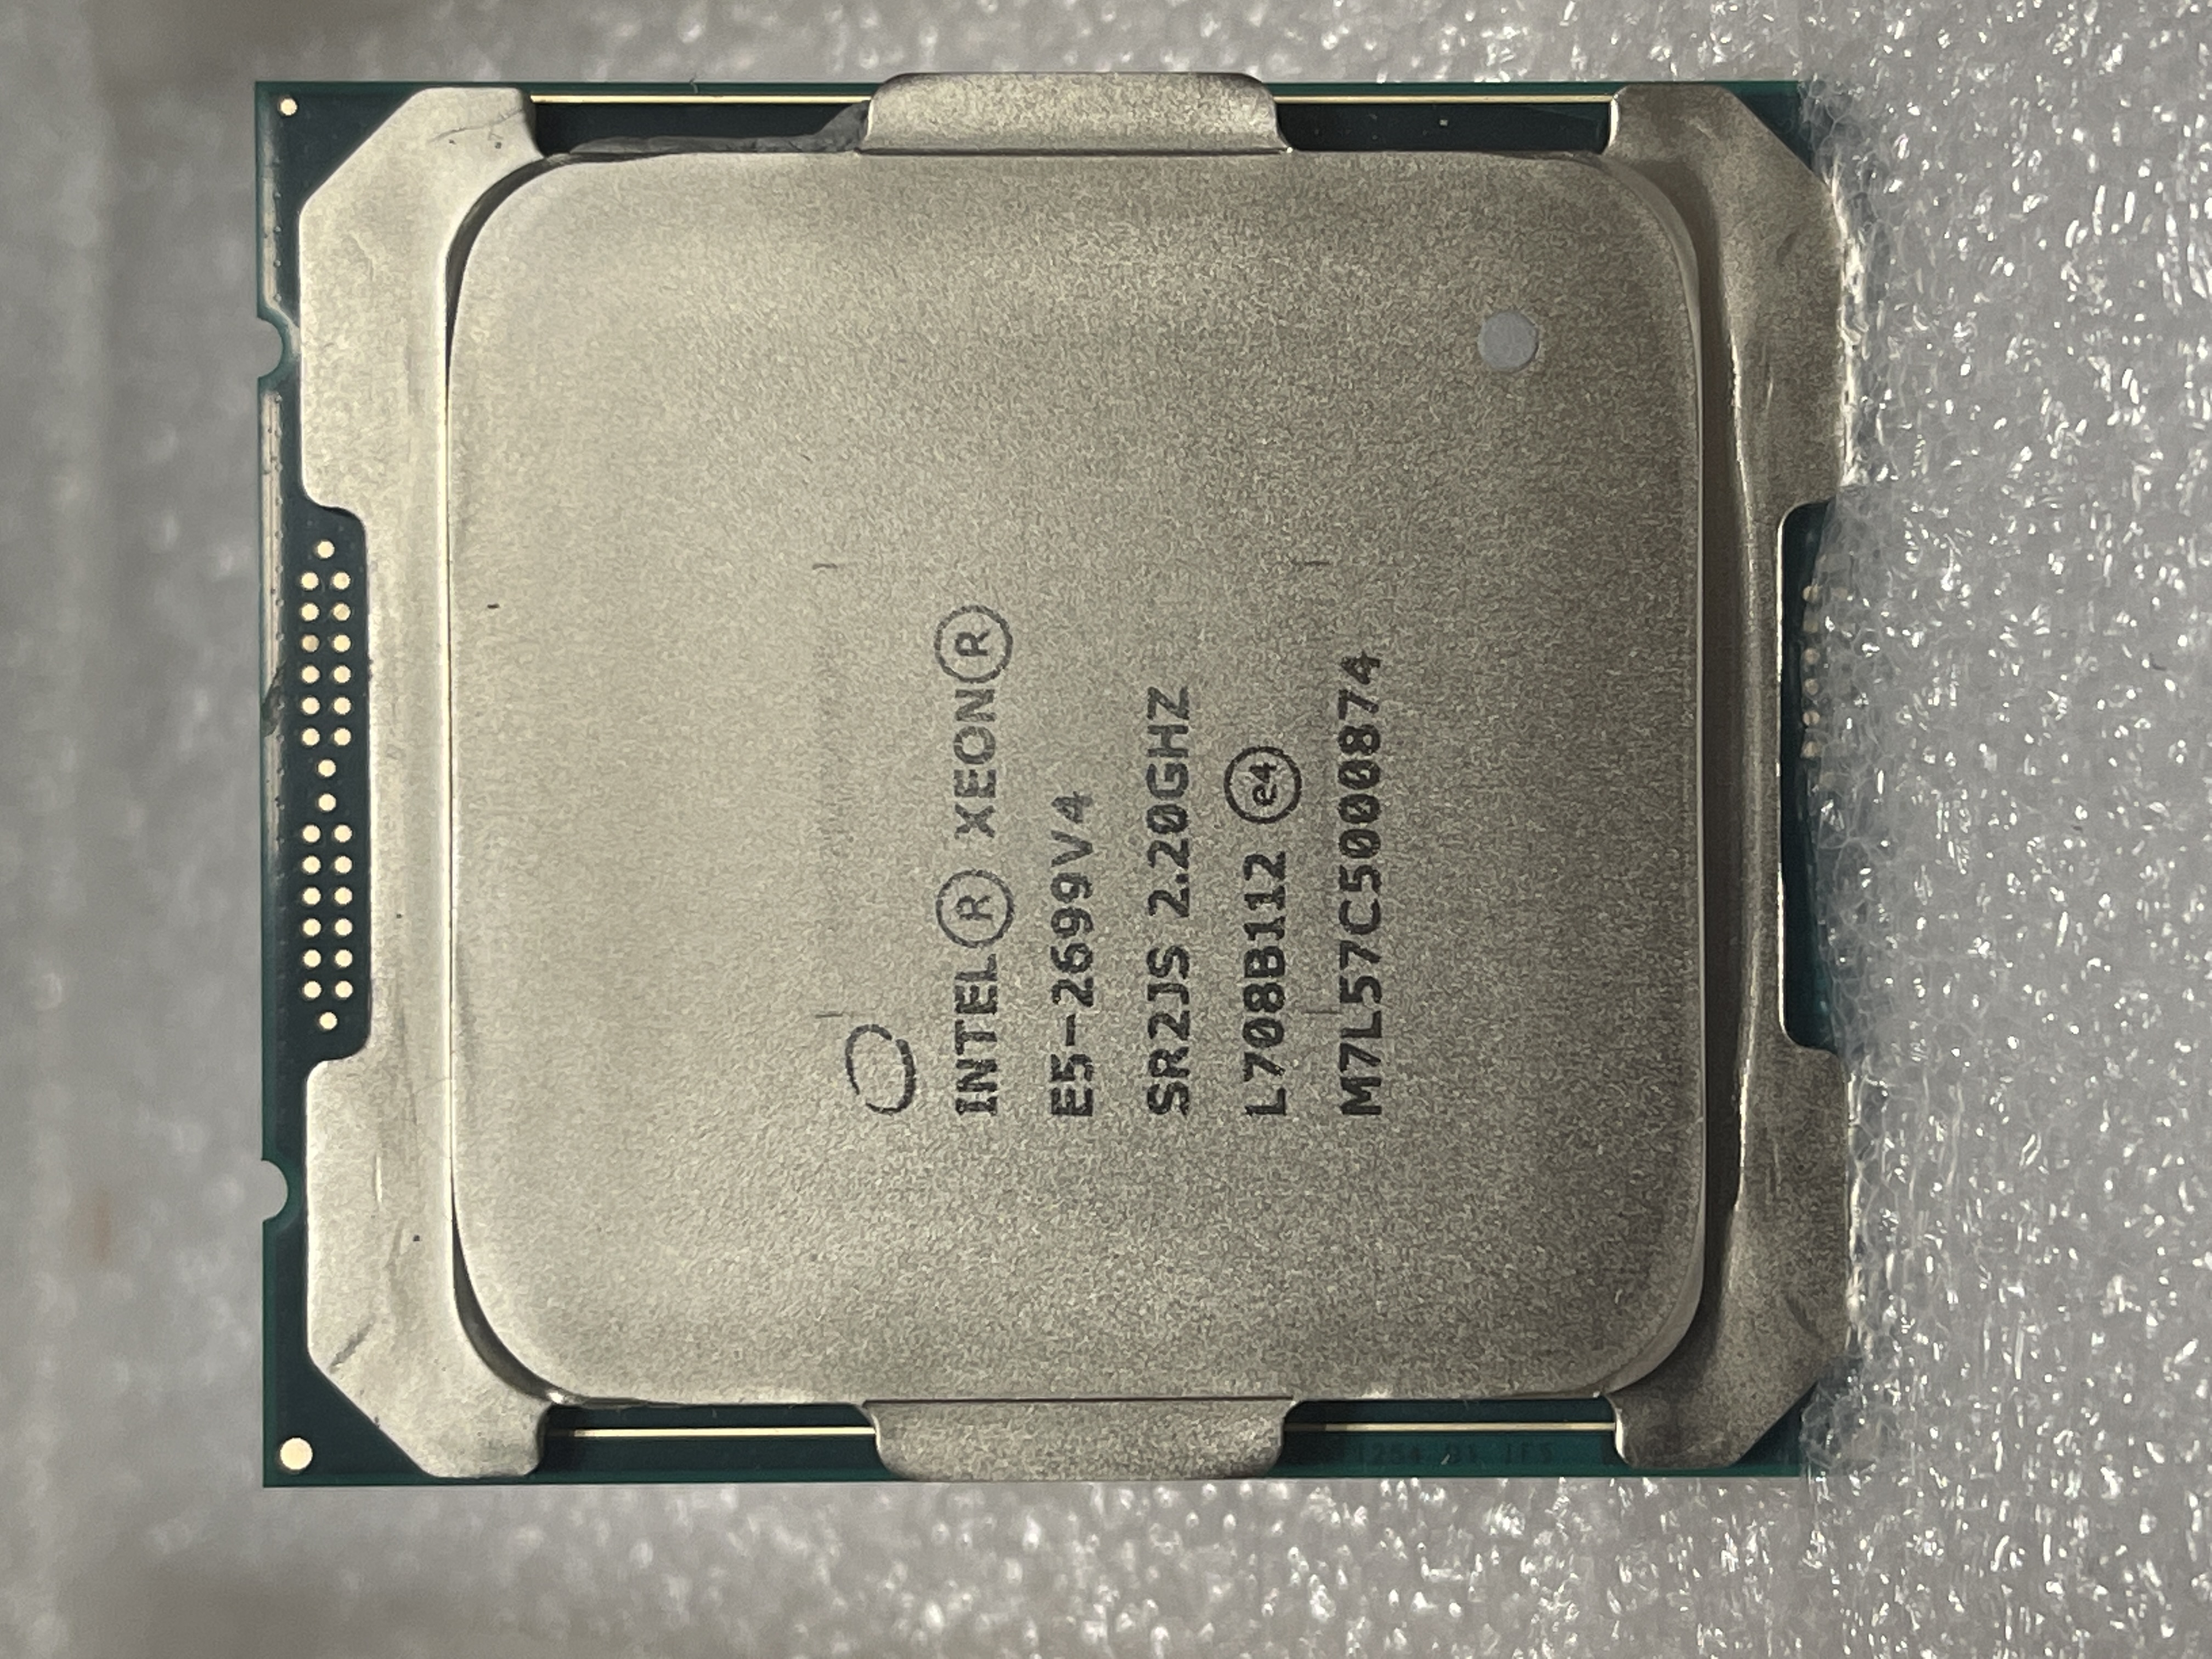 سی پی یو سرور Intel Xeon E5-2699 V4